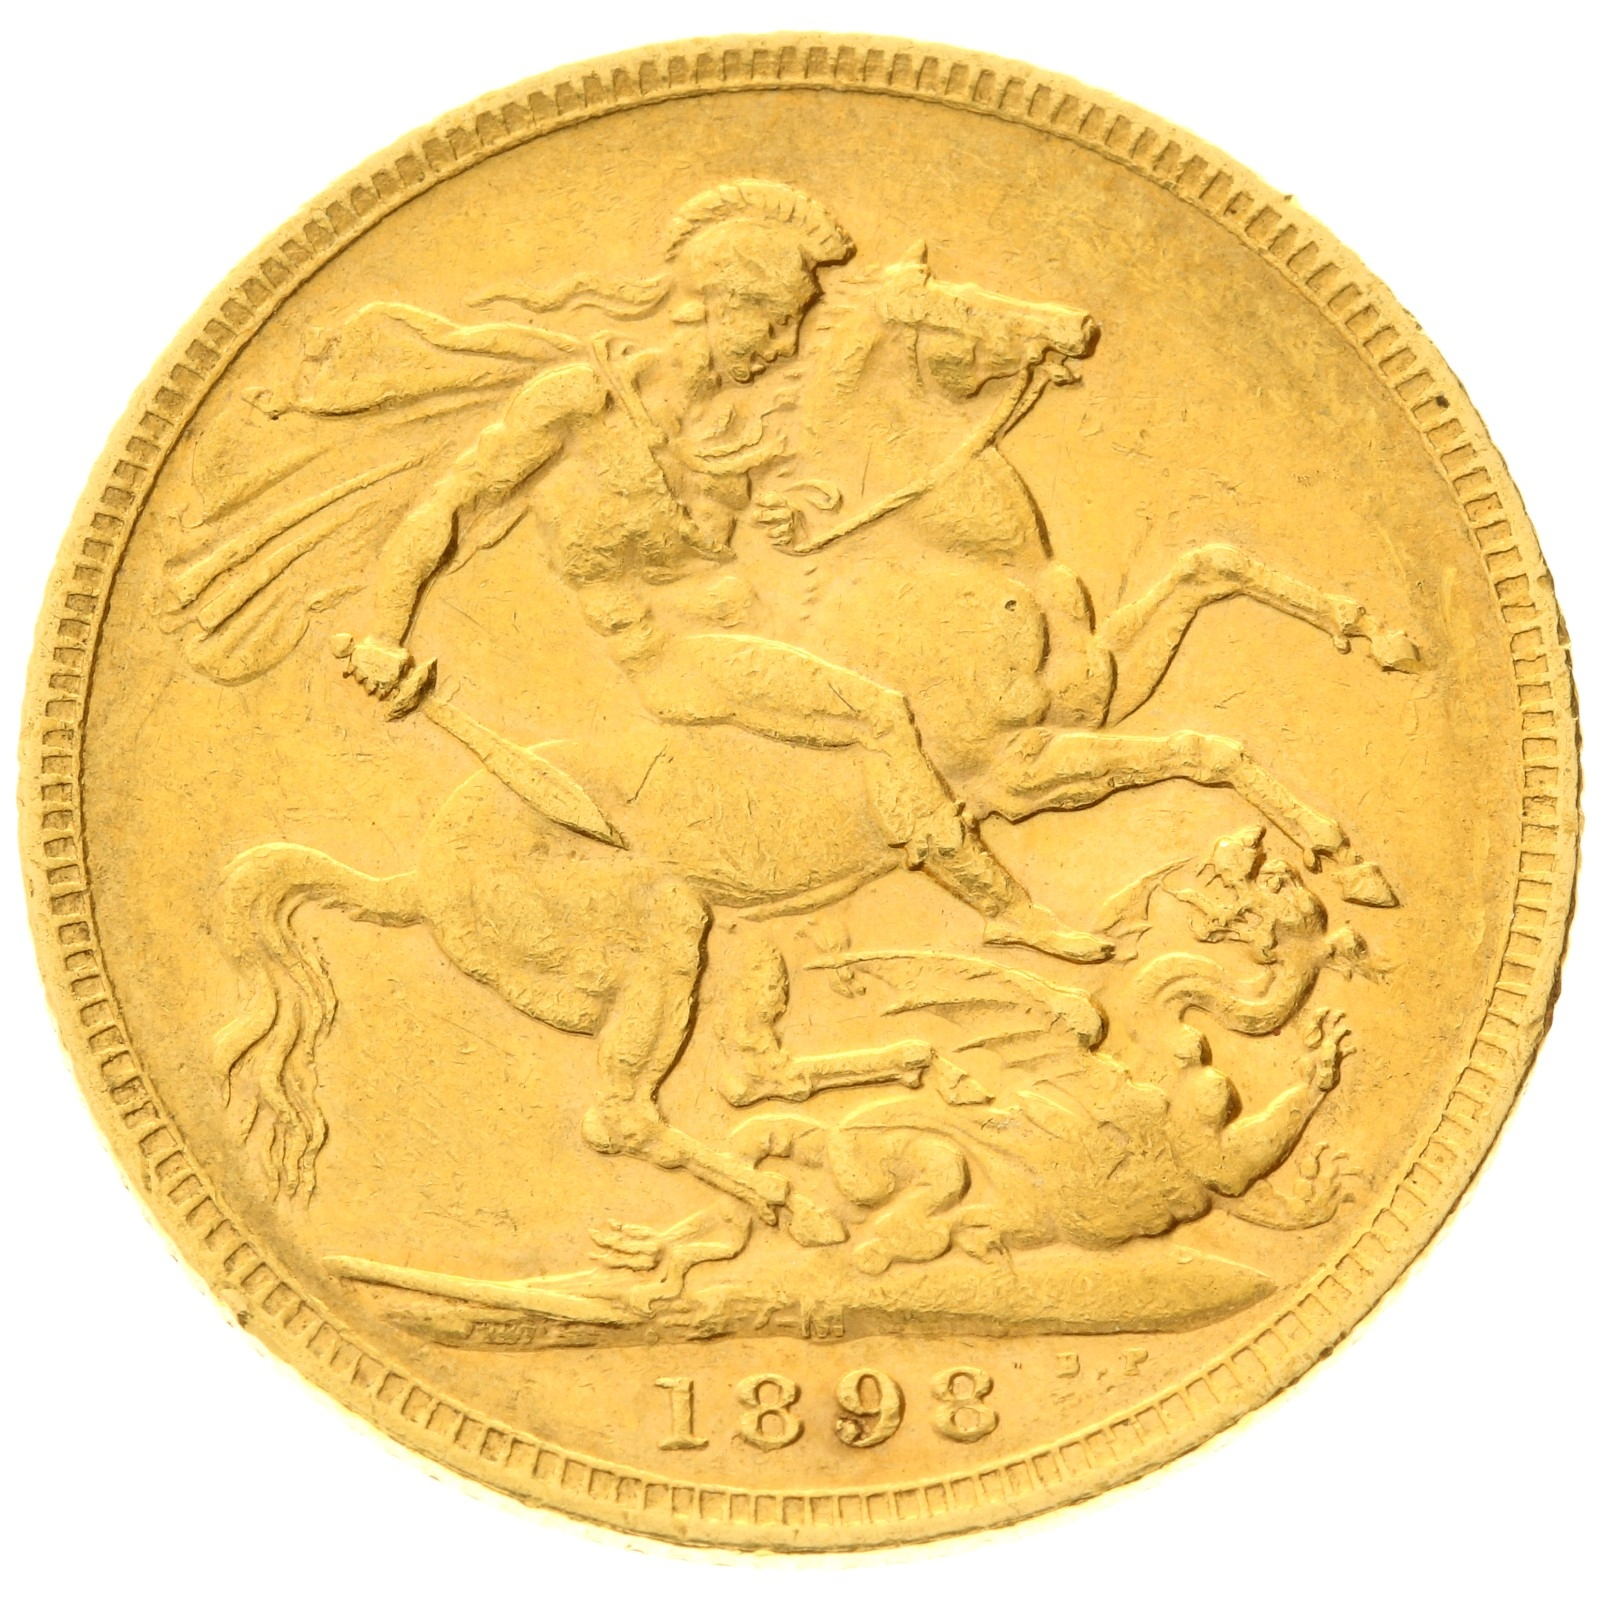 Australia - 1 sovereign - 1898 - M - Victoria